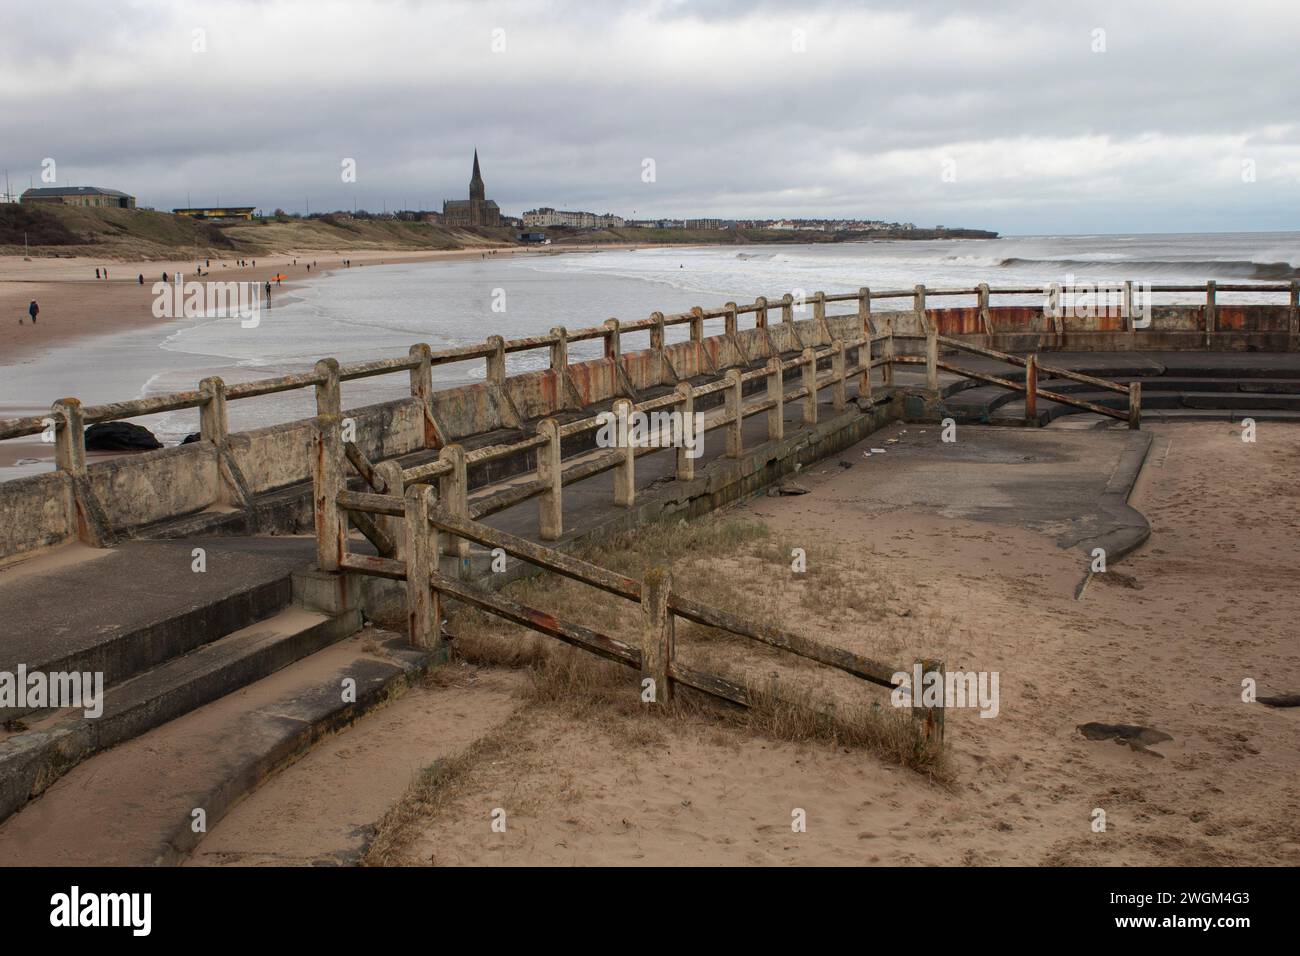 Les vestiges en décomposition de la piscine extérieure de Tynemouth, un bassin de marée d'eau salée des années 1920, à l'extrémité sud de la plage de Tynemouth Longsands en Angleterre Banque D'Images